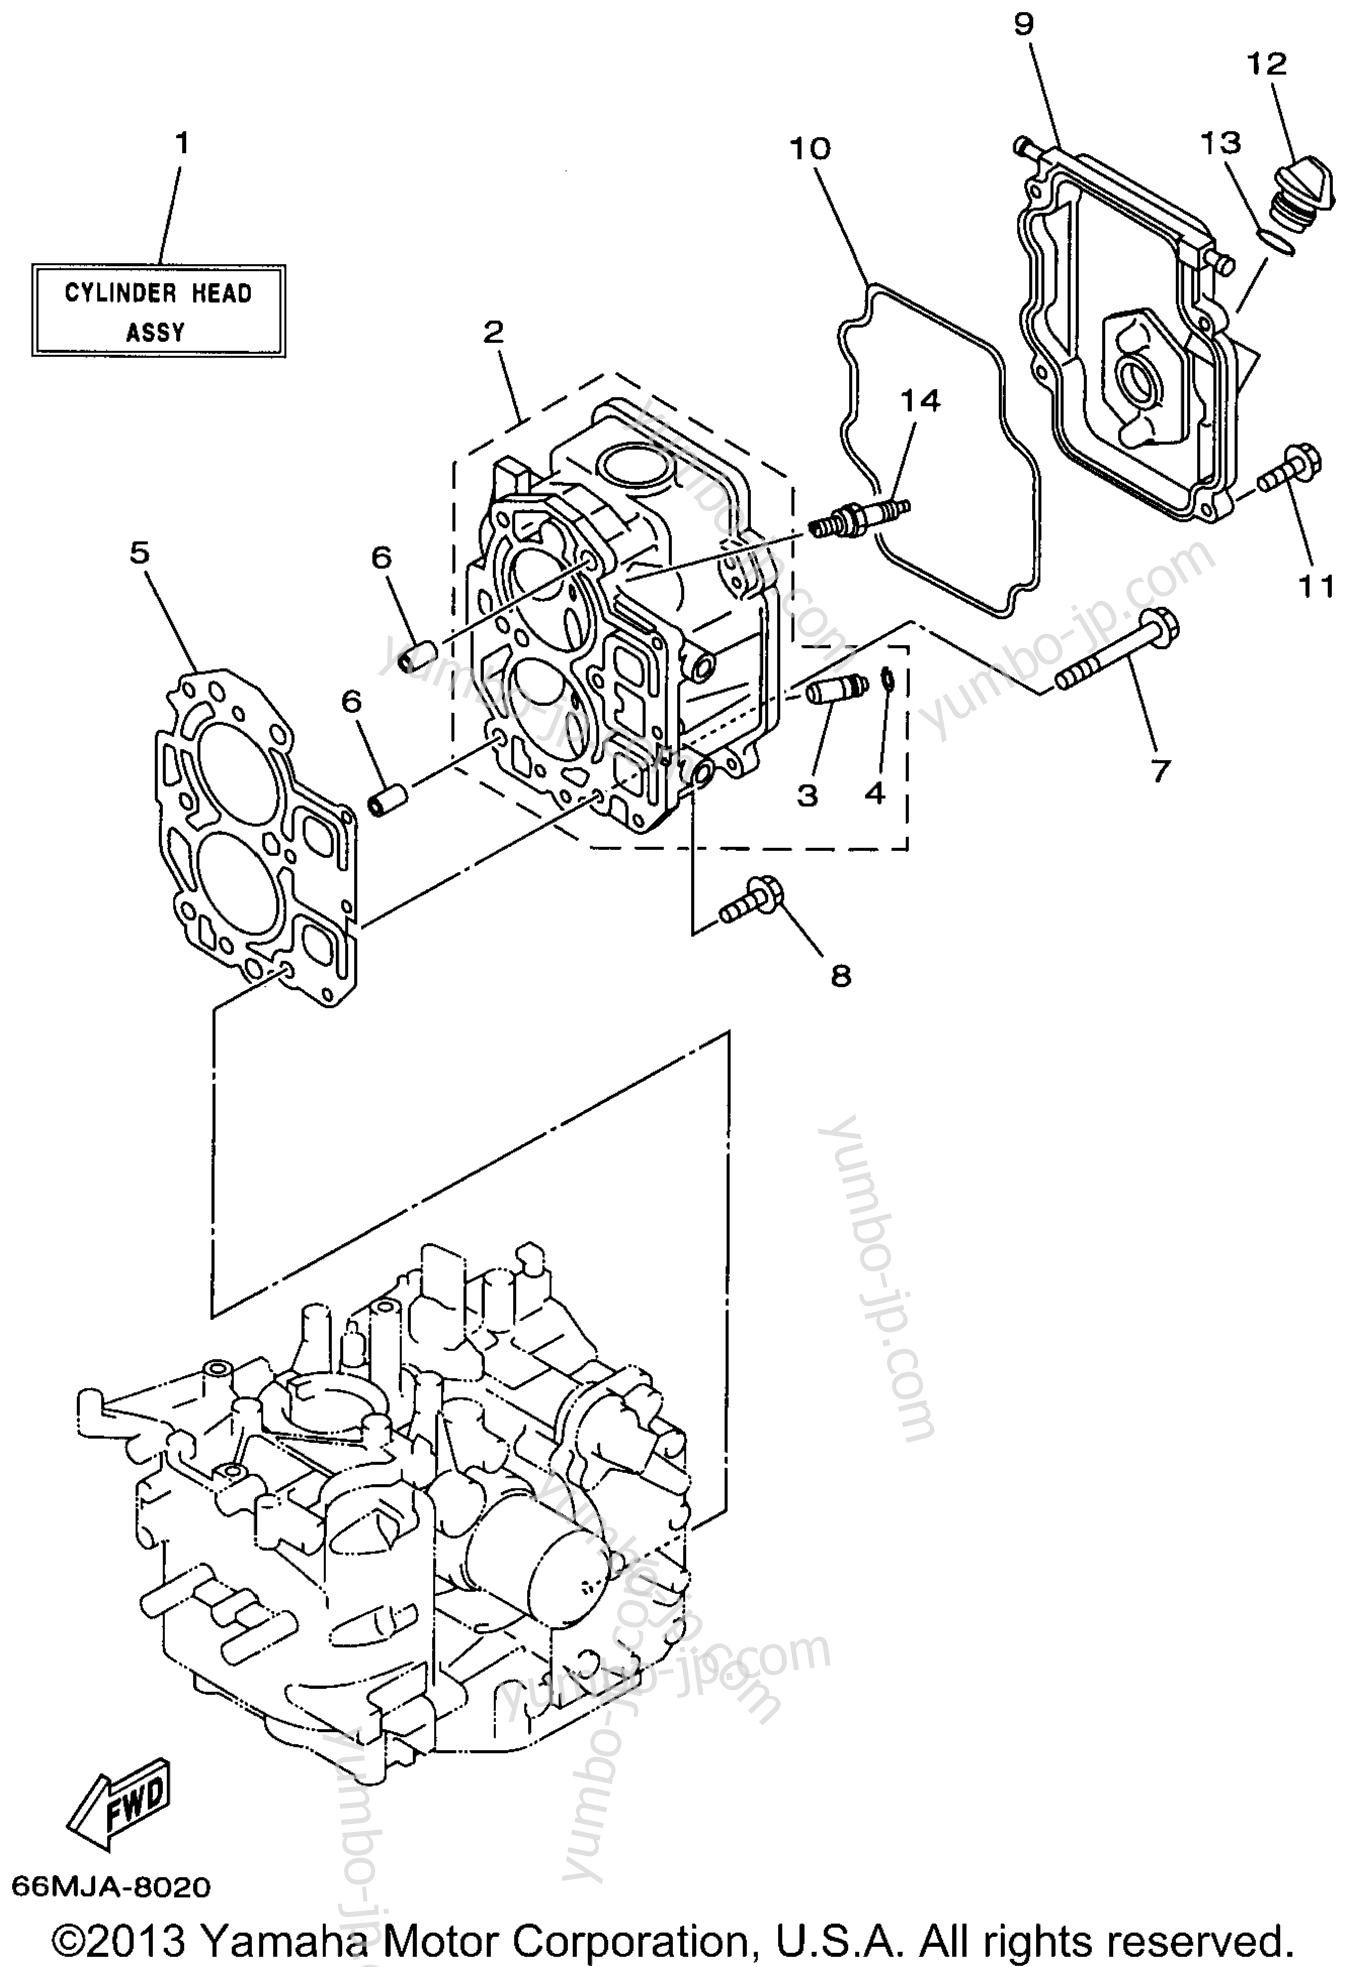 Cylinder Crankcase 2 для лодочных моторов YAMAHA F15ESHW 1998 г.